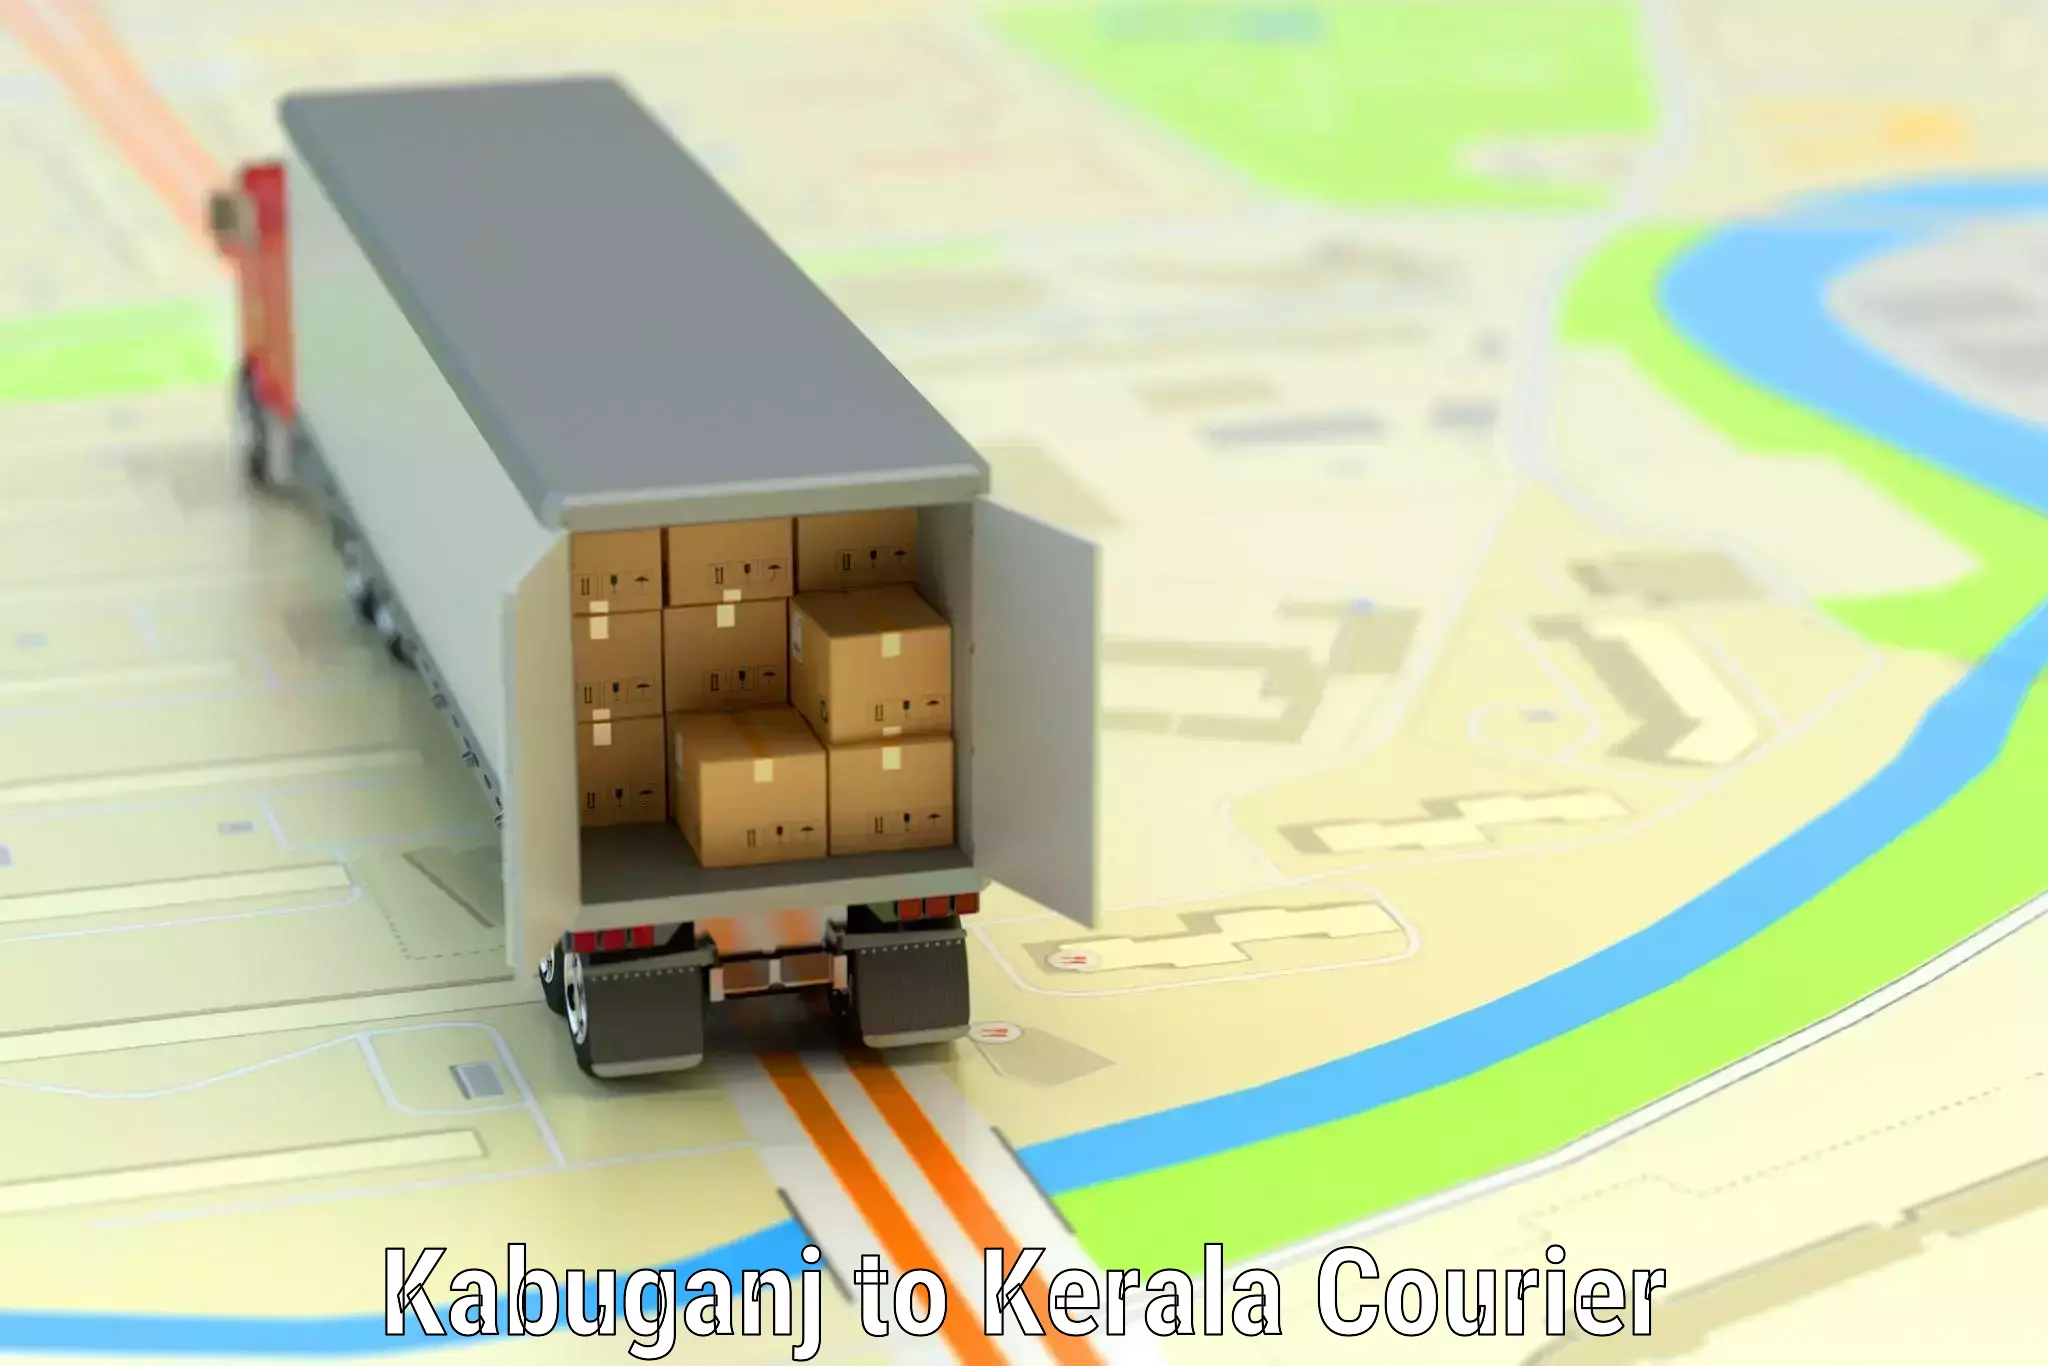 Professional baggage transport Kabuganj to Kochi